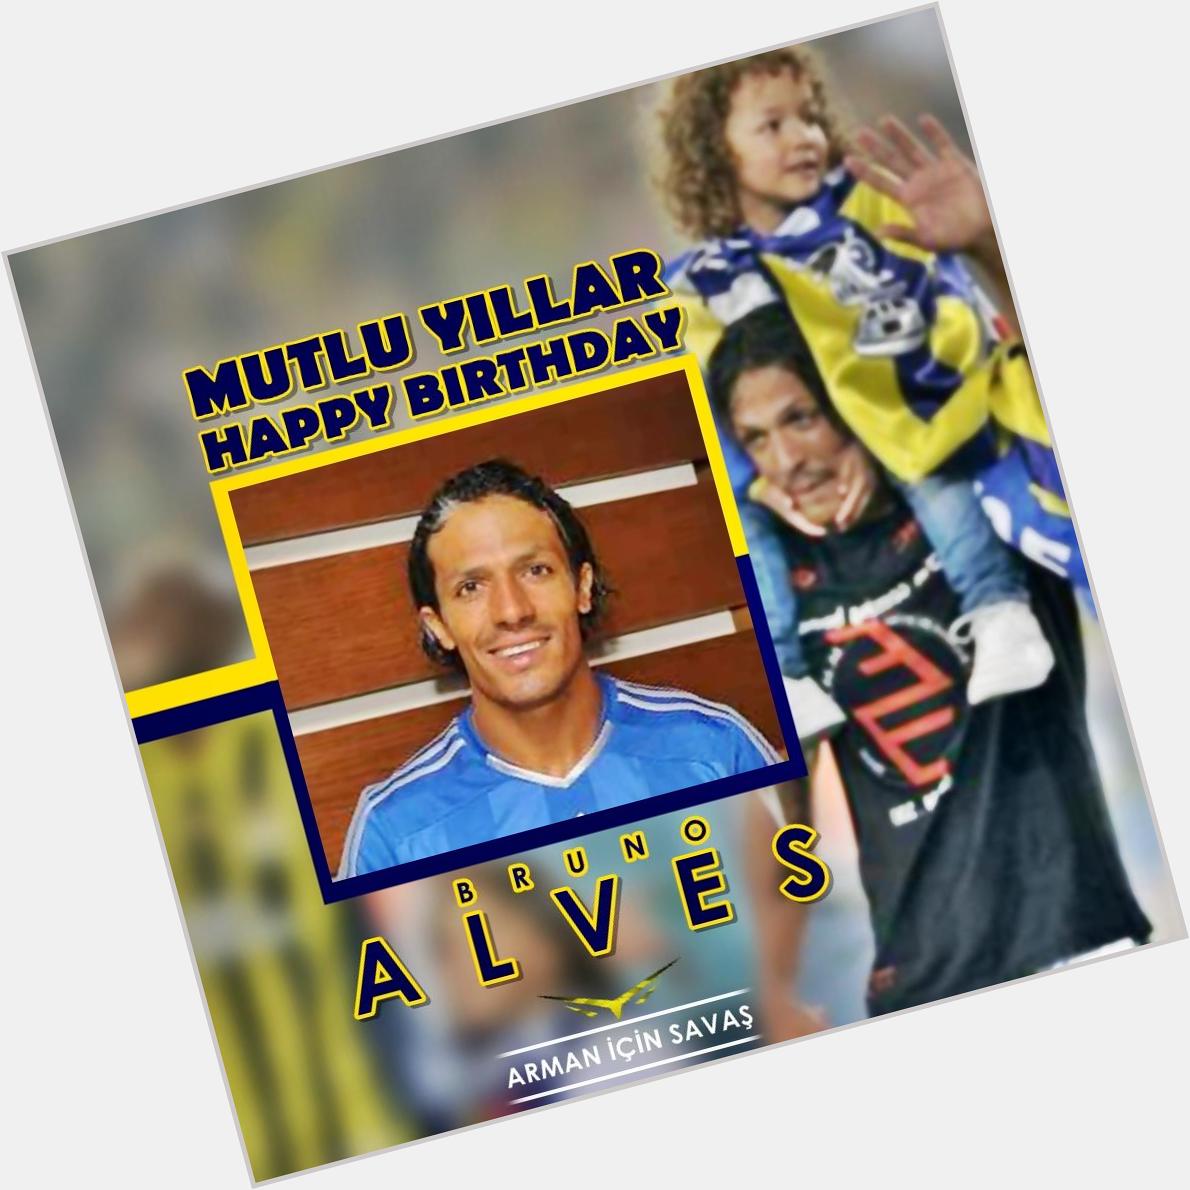 Futbolcumuz Bruno Alvesin do um gününü kutlar, mutlu y llar dileriz!

Happy Birthday Bruno Alves! 